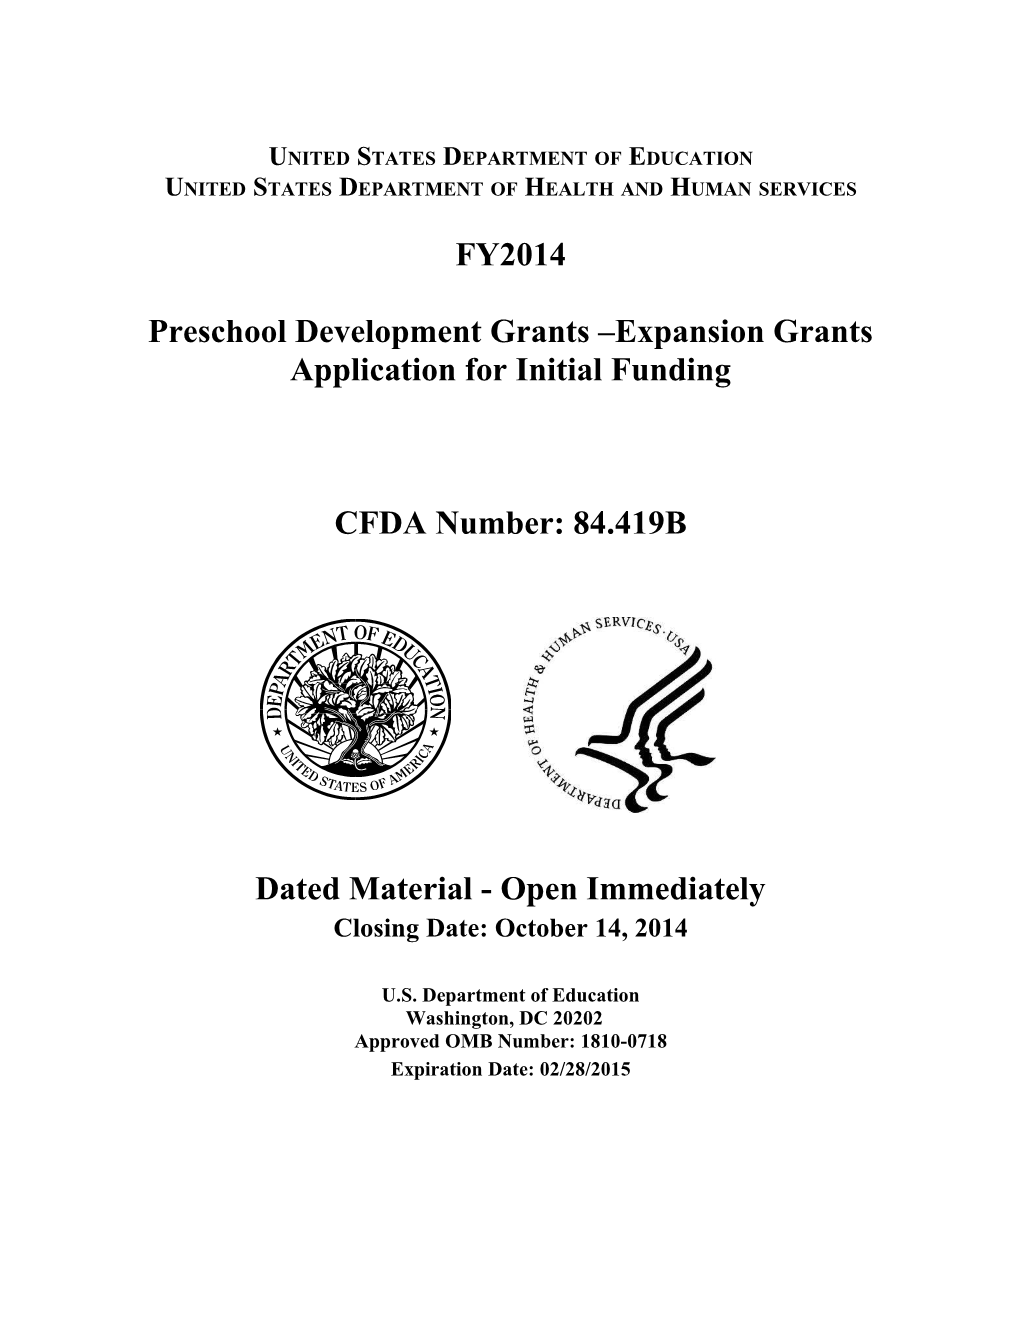 Preschool Development Grants - Expansion Competition 2014 (PDF)